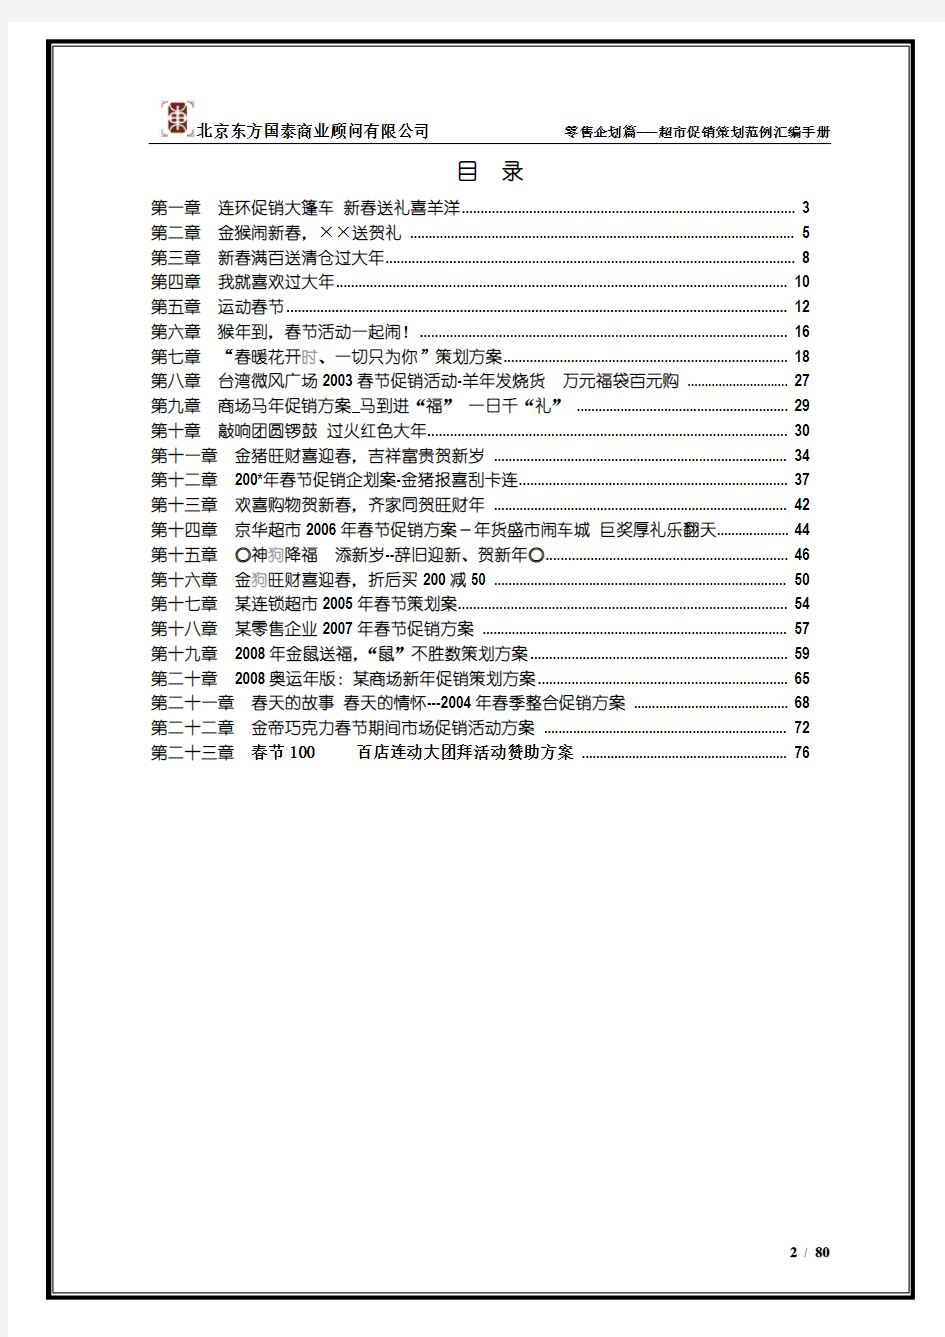 1促销策划范例汇编手册(春节篇.上)80页(1)